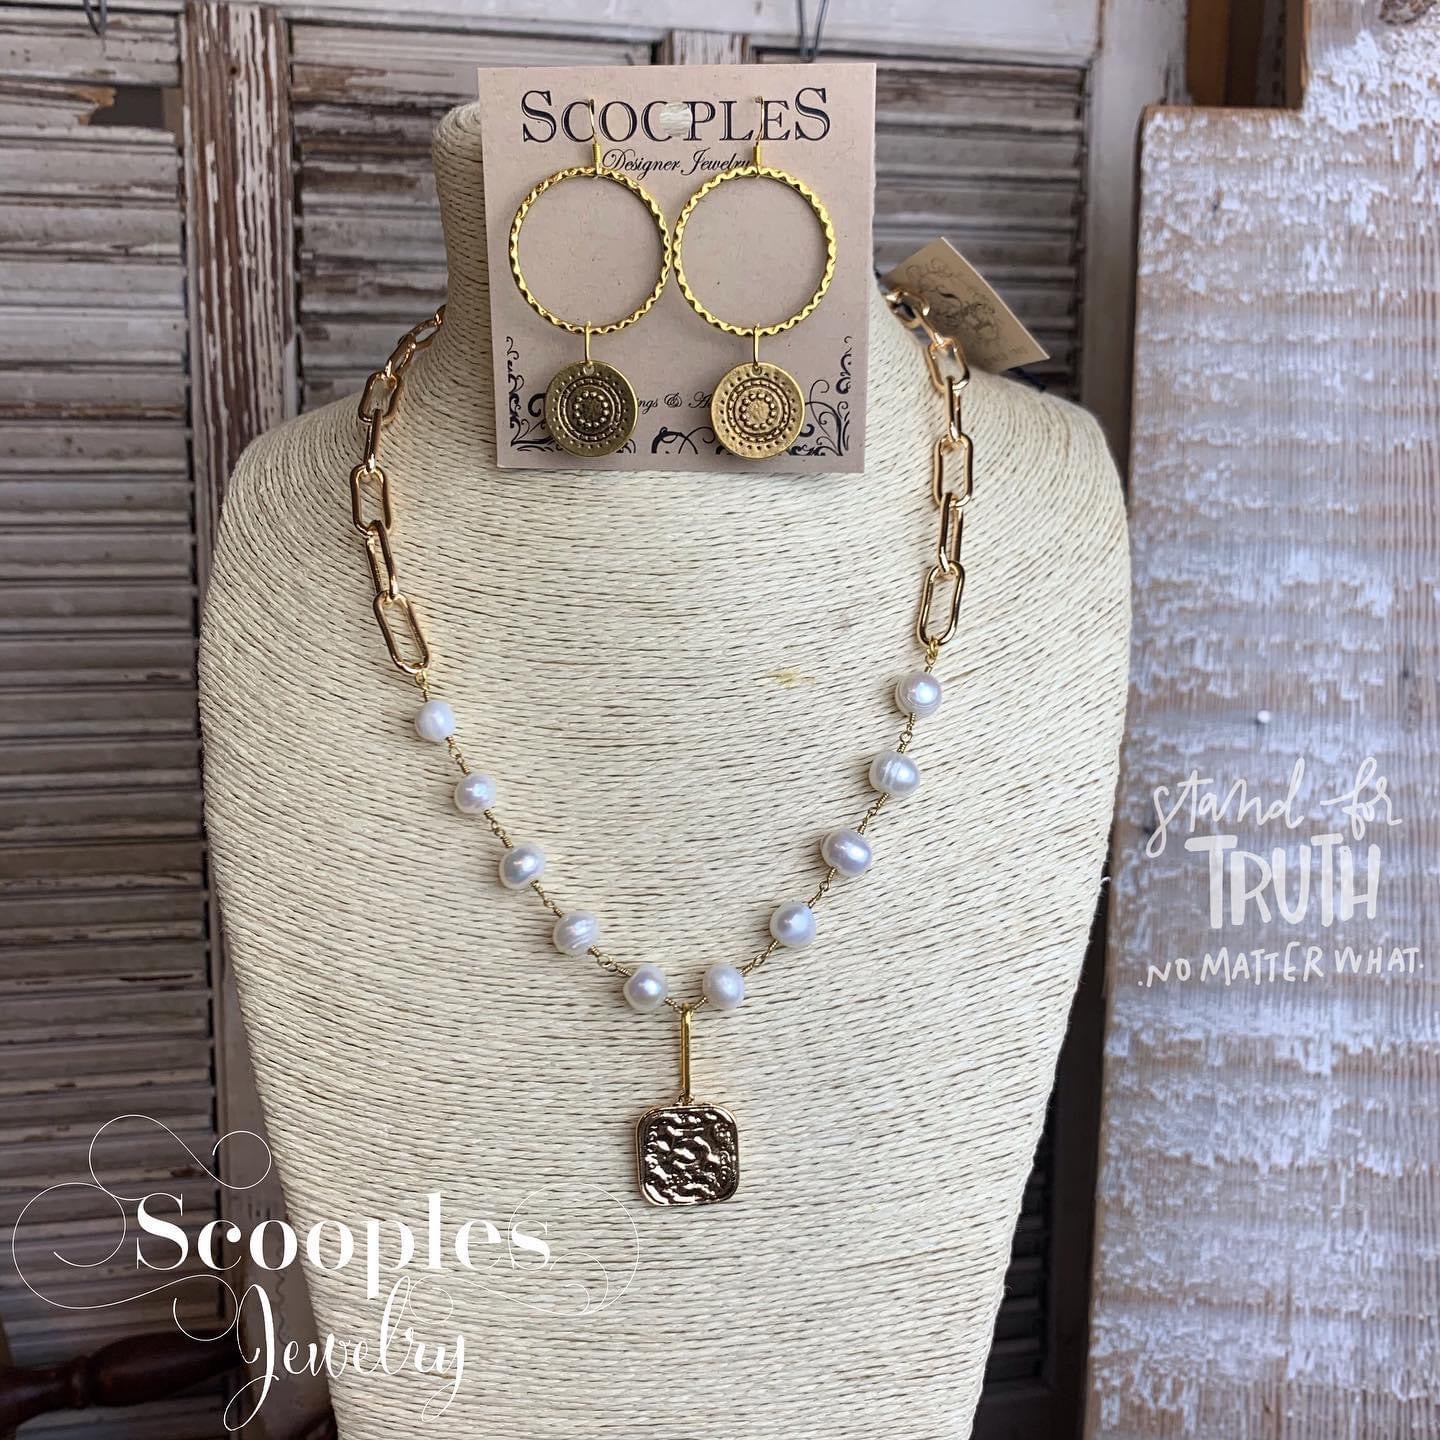 Scooples Jewelry